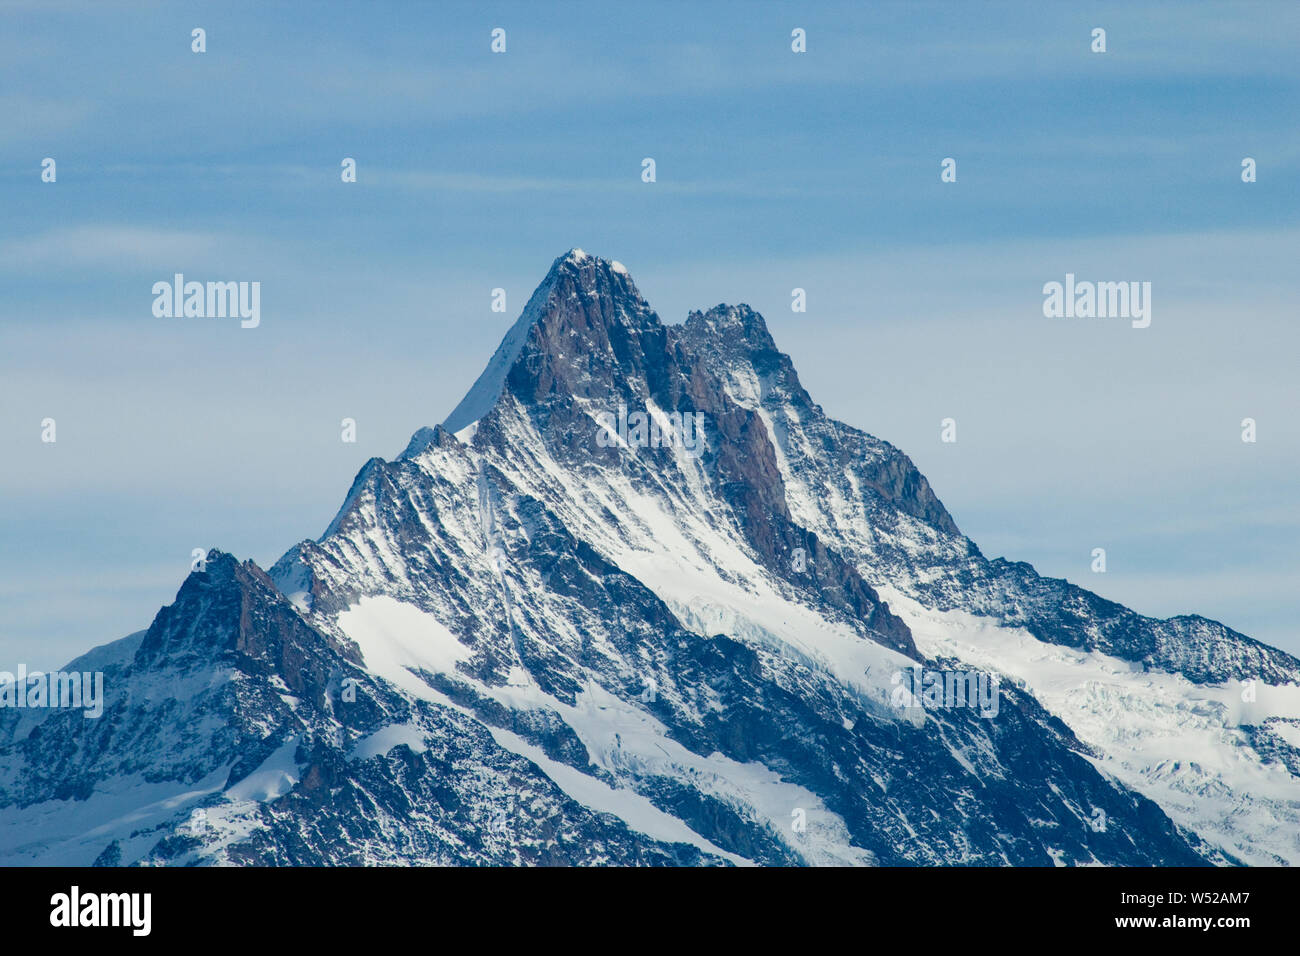 Schreckhorn (4078 m) mit Lauteraarhorn (dahinter) und kleinem Schreckhorn (links); sie gehören zum UNESCO Welterbe Schweizer Alpen Jungfrau-Aletsch Stock Photo